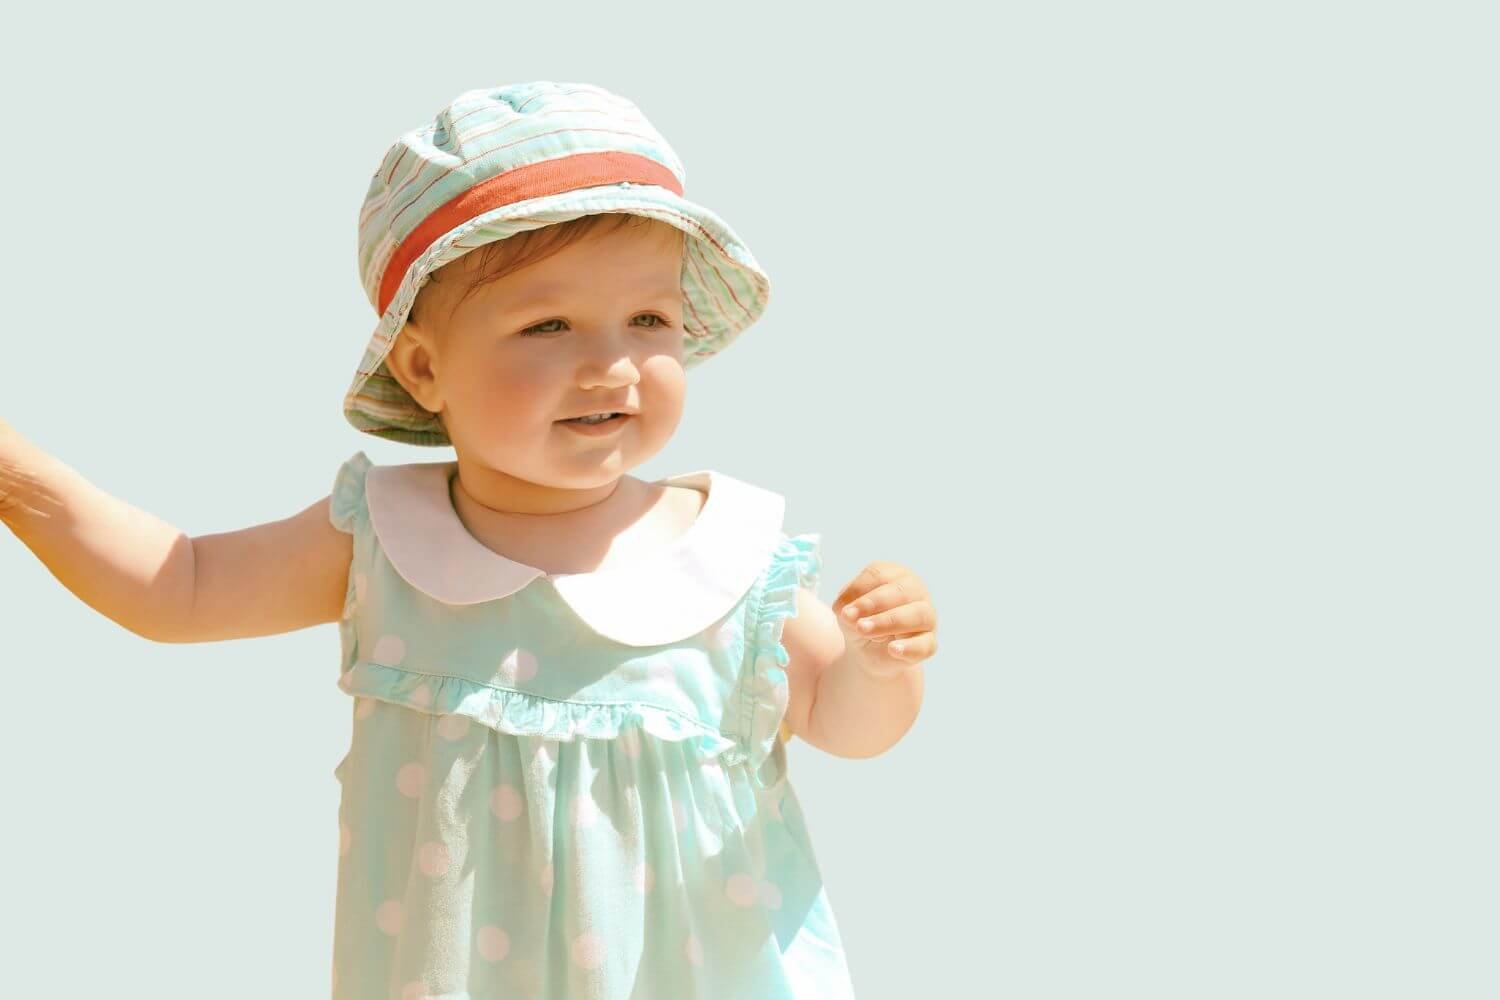 little girl wearing sun hat and polka dot dress